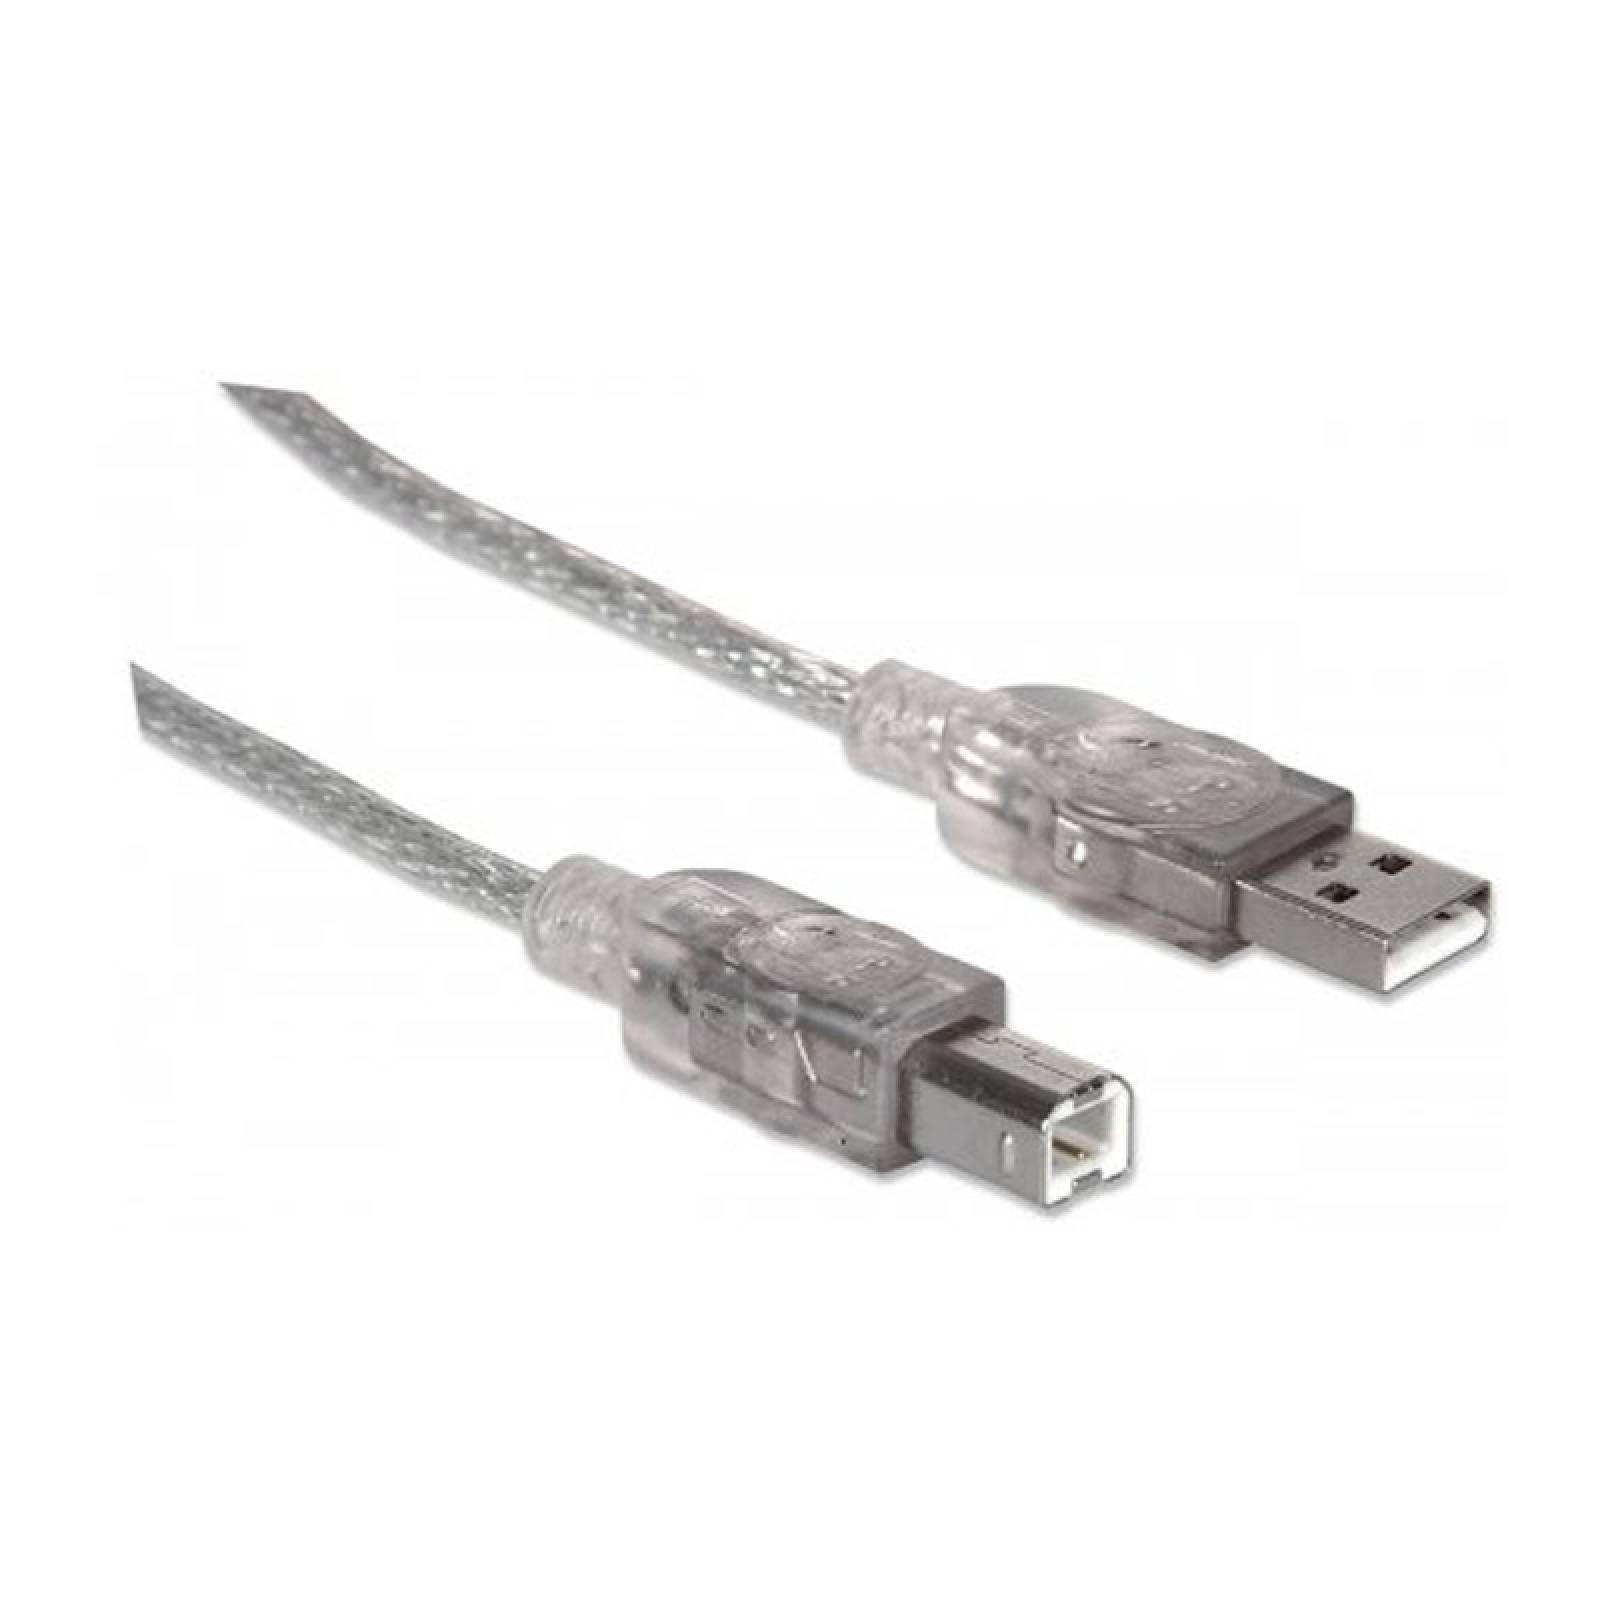 CABLE USB A-B MANHATTAN 333405 PLATA, MACHO, 1.8 METROS